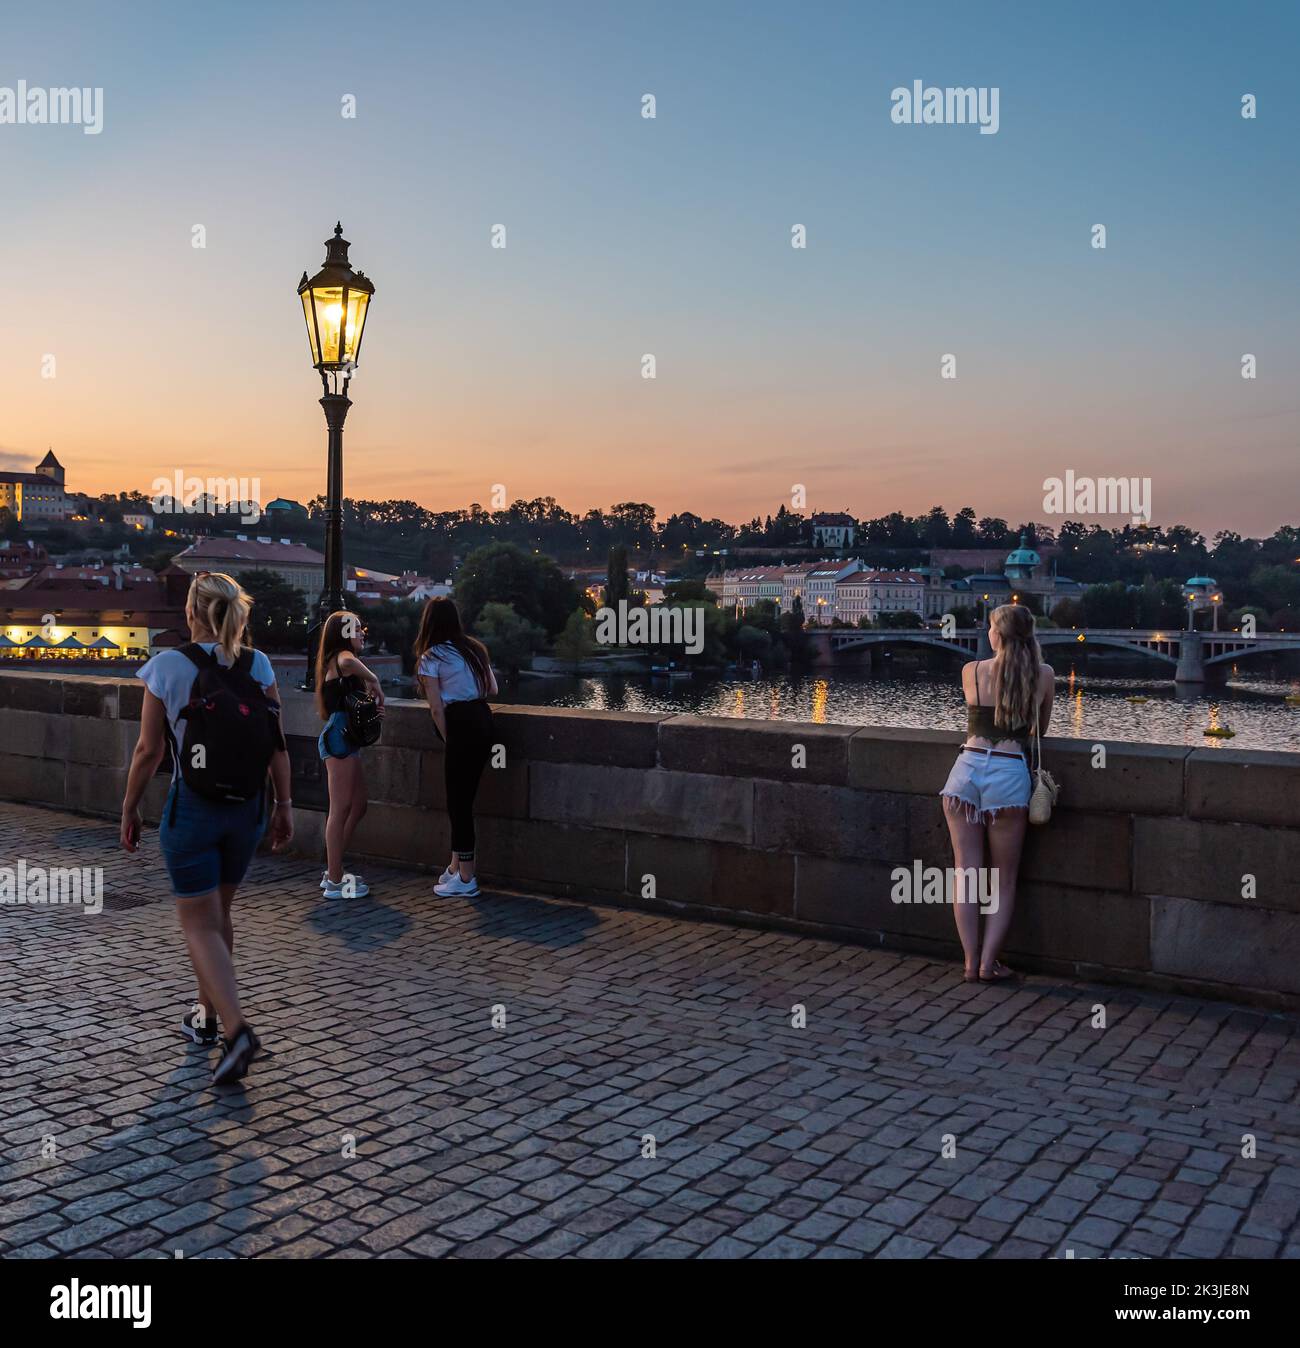 Praga - Repubblica Ceca - 08 01 2020 turisti in abiti estivi a piedi sul ponte Carlo durante una notte d'estate con un cielo colorato Foto Stock